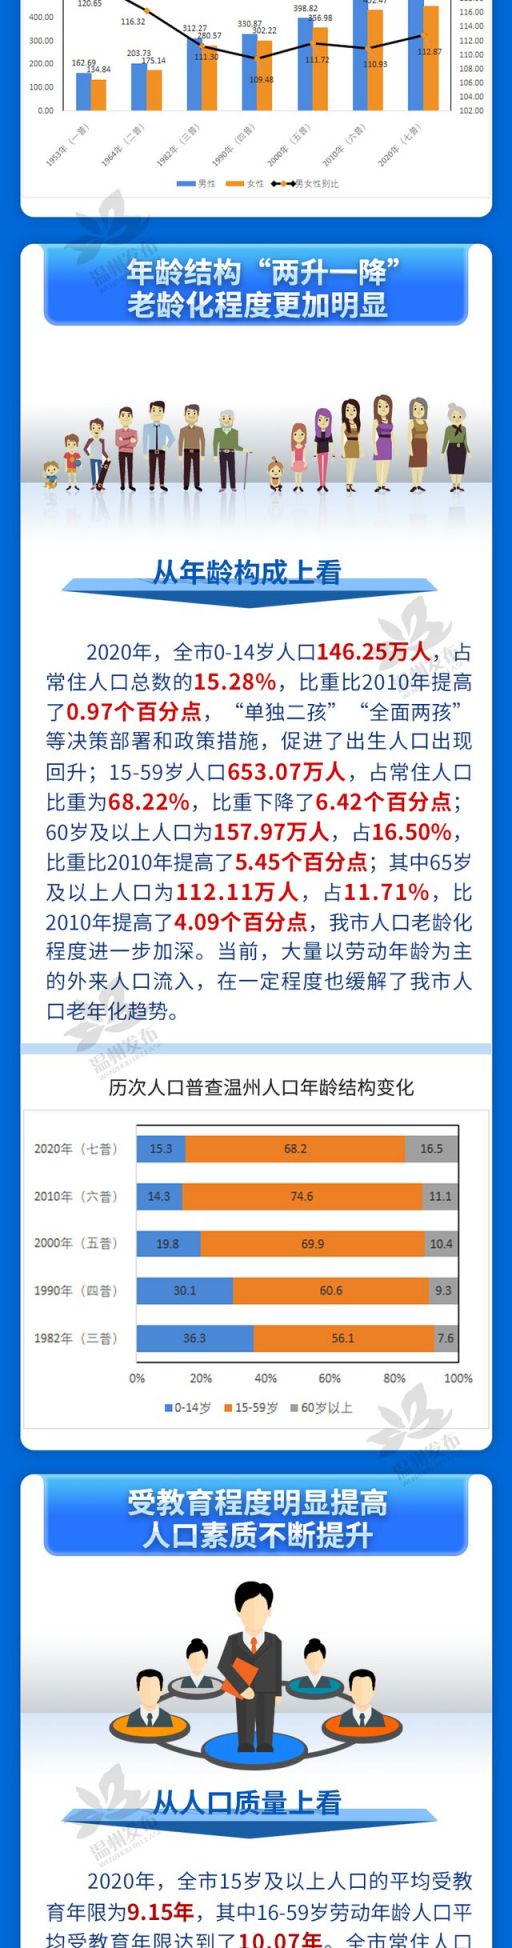 温州统计局发布近十年来温州人口发展变化六大特点